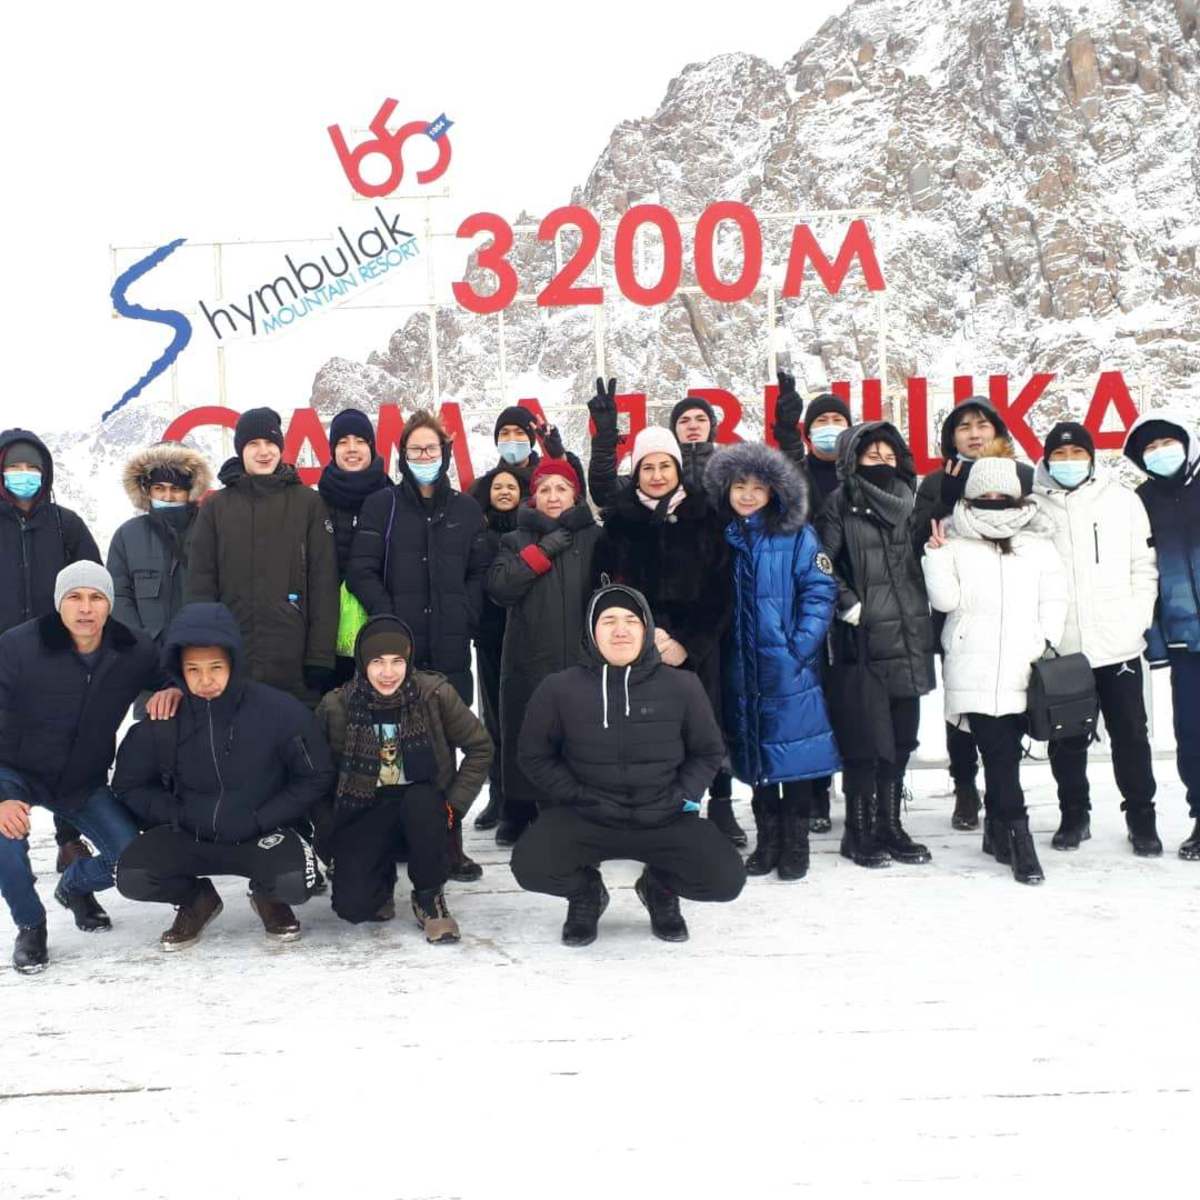 2021 жылдың 15 ноябрьсында балалар Шымбұлақ тау шаңғысы курортында болды. Биіктігі 3200 м.15.11.2021 г. Ребята посетили горнолыжный курорт Шымбулак. Высота 3 200 м.